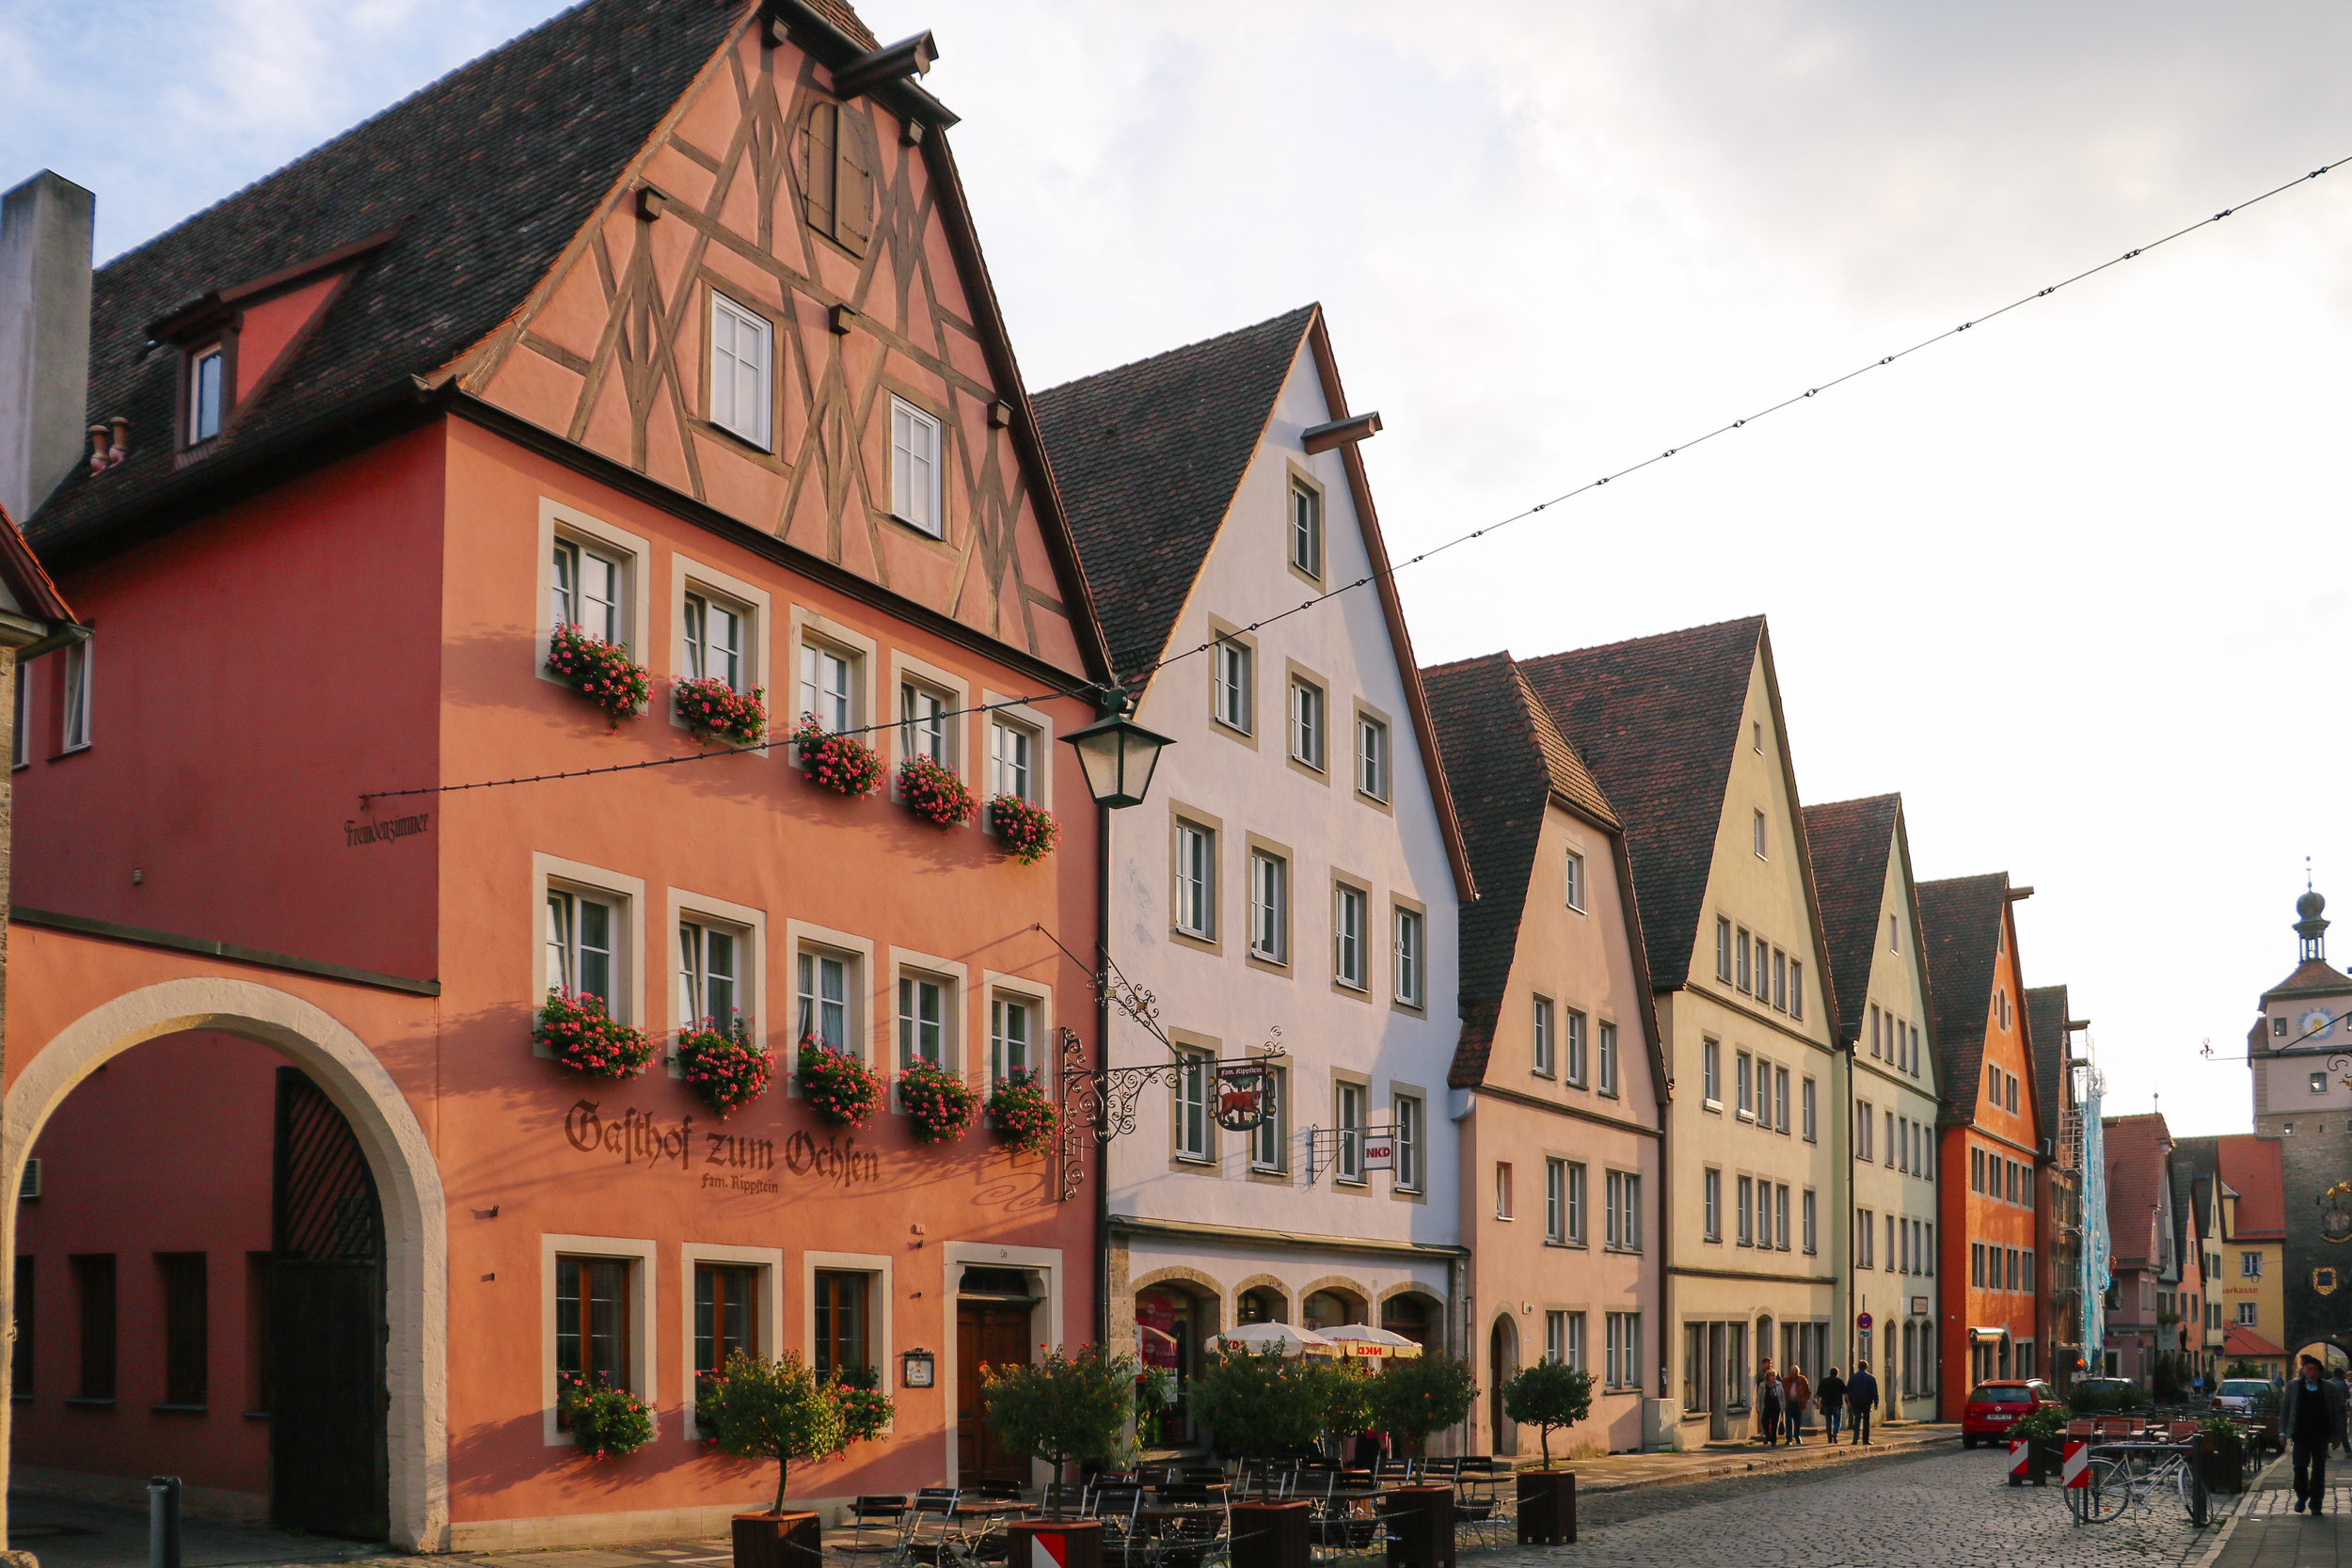 Guide to Rothenburg ob der Tauber